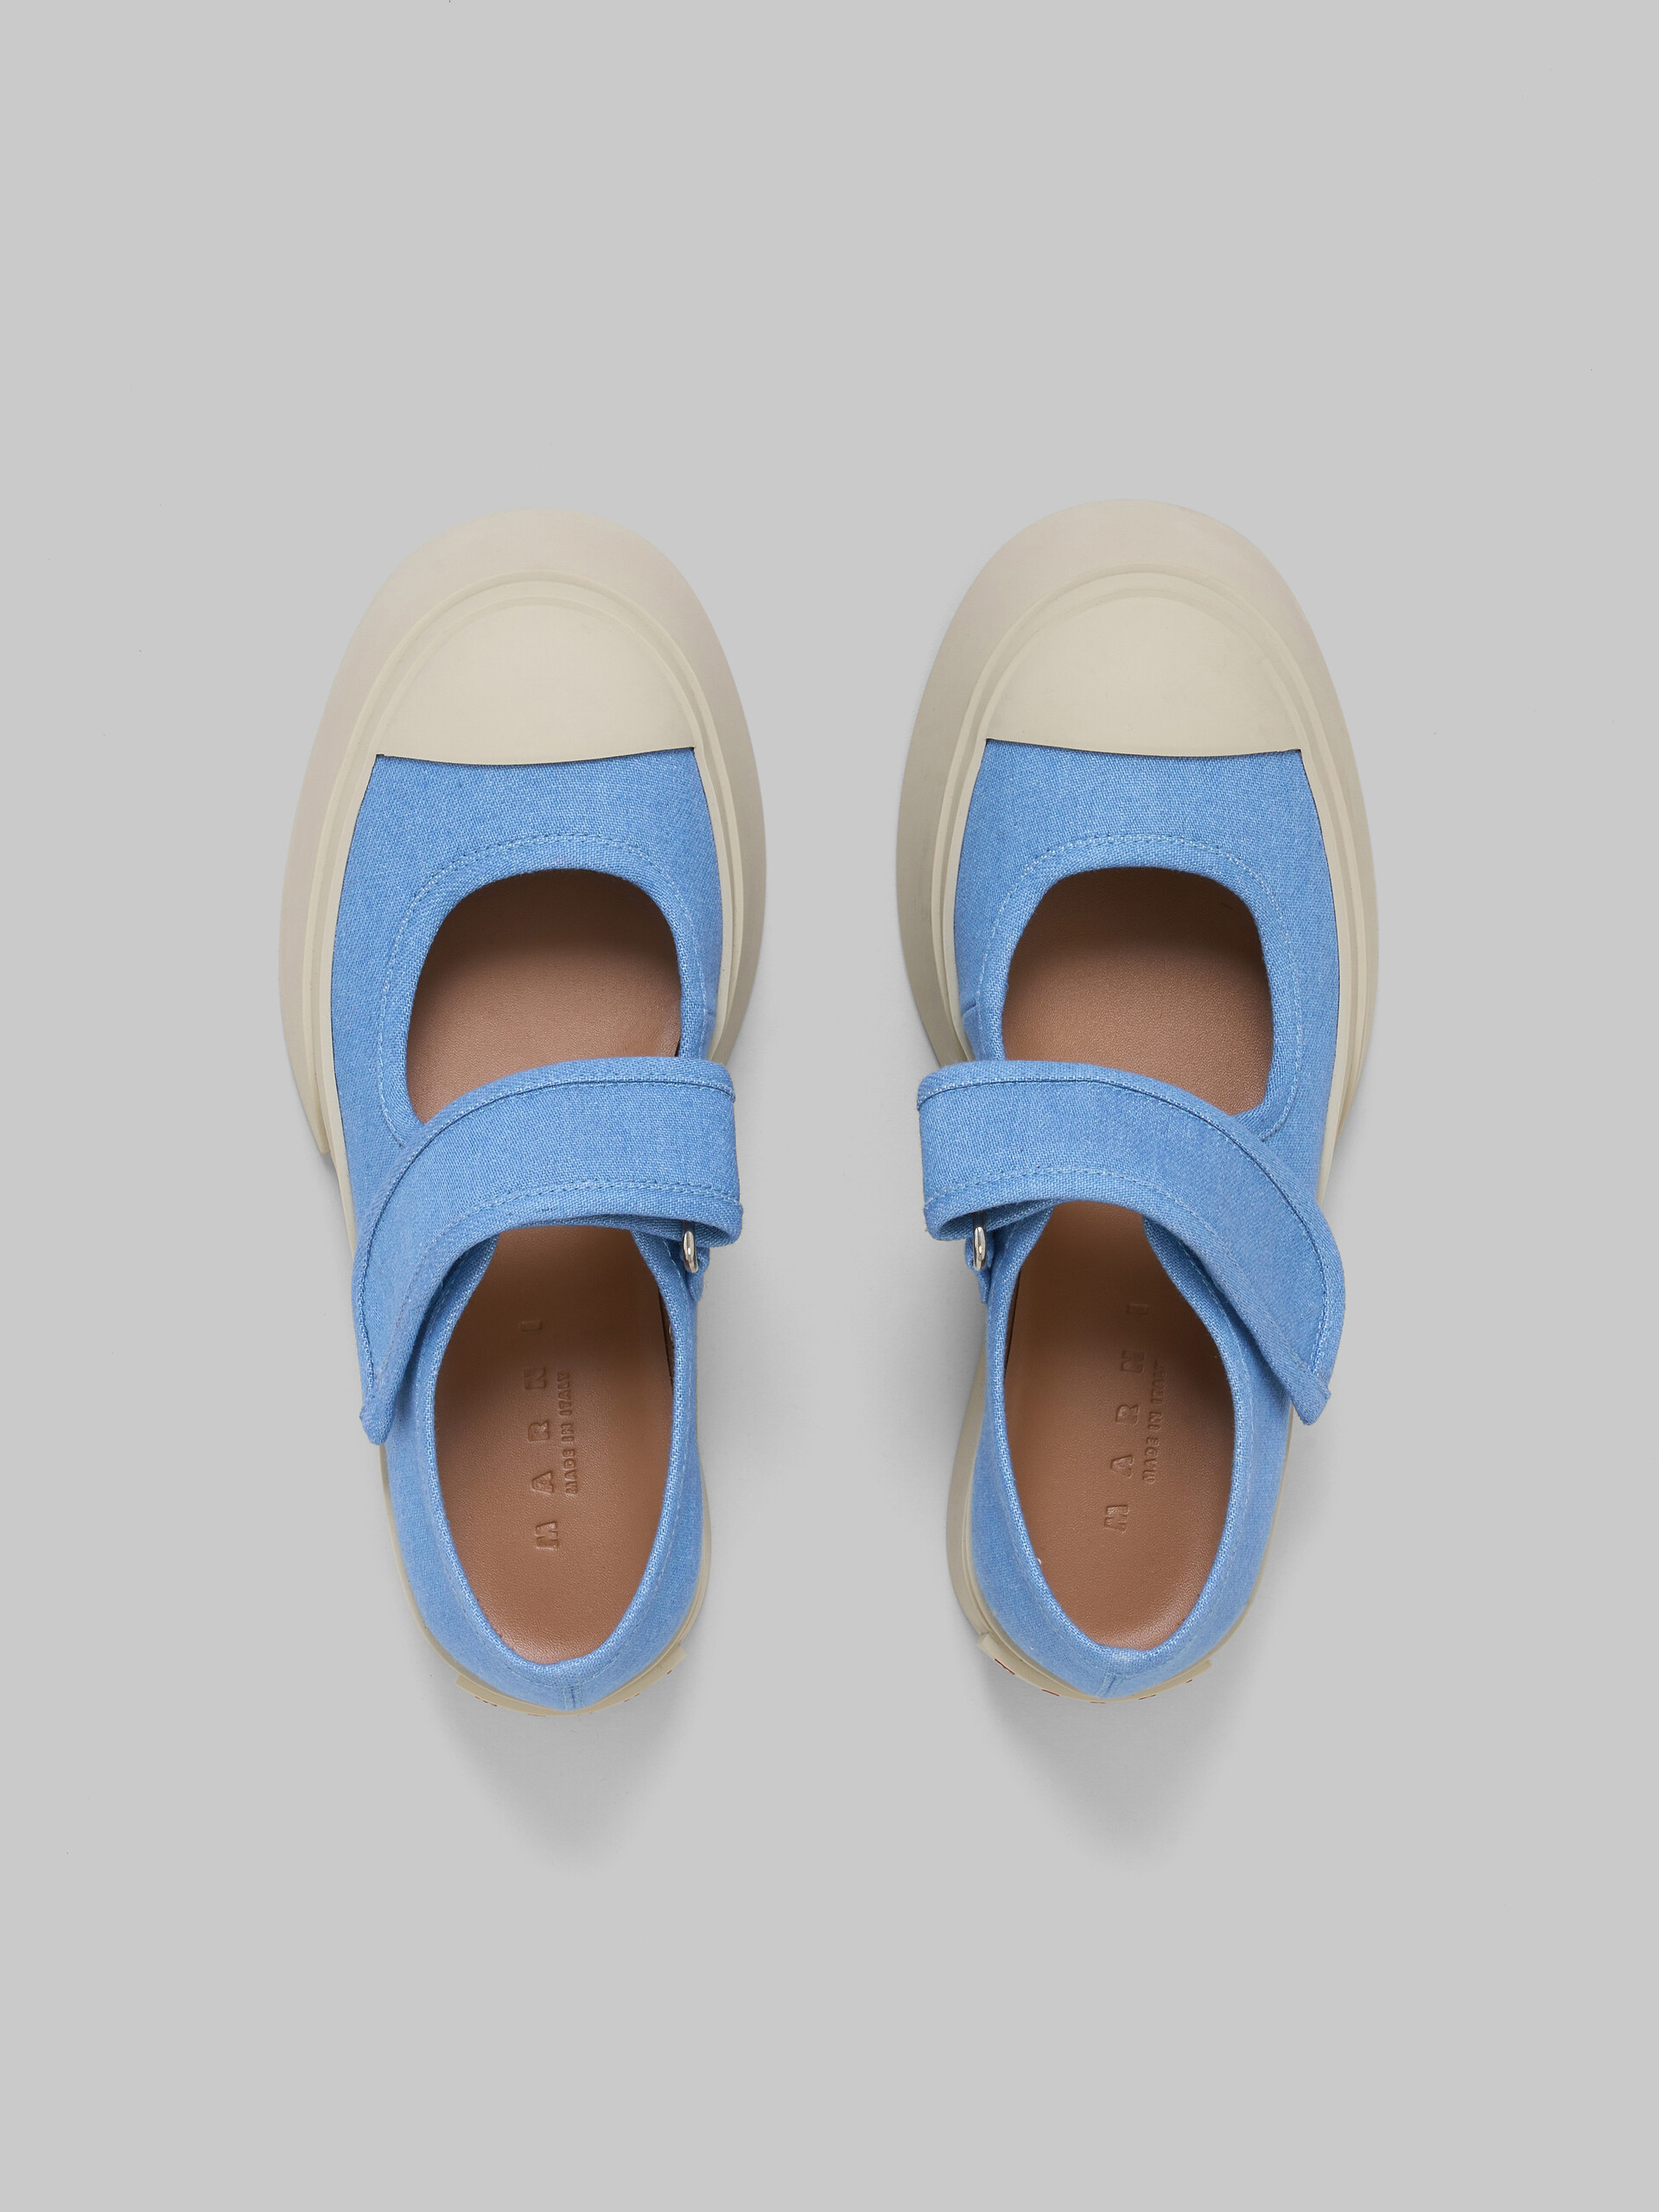 Hellblaue Mary Jane-Sneakers aus Denim - Sneakers - Image 4